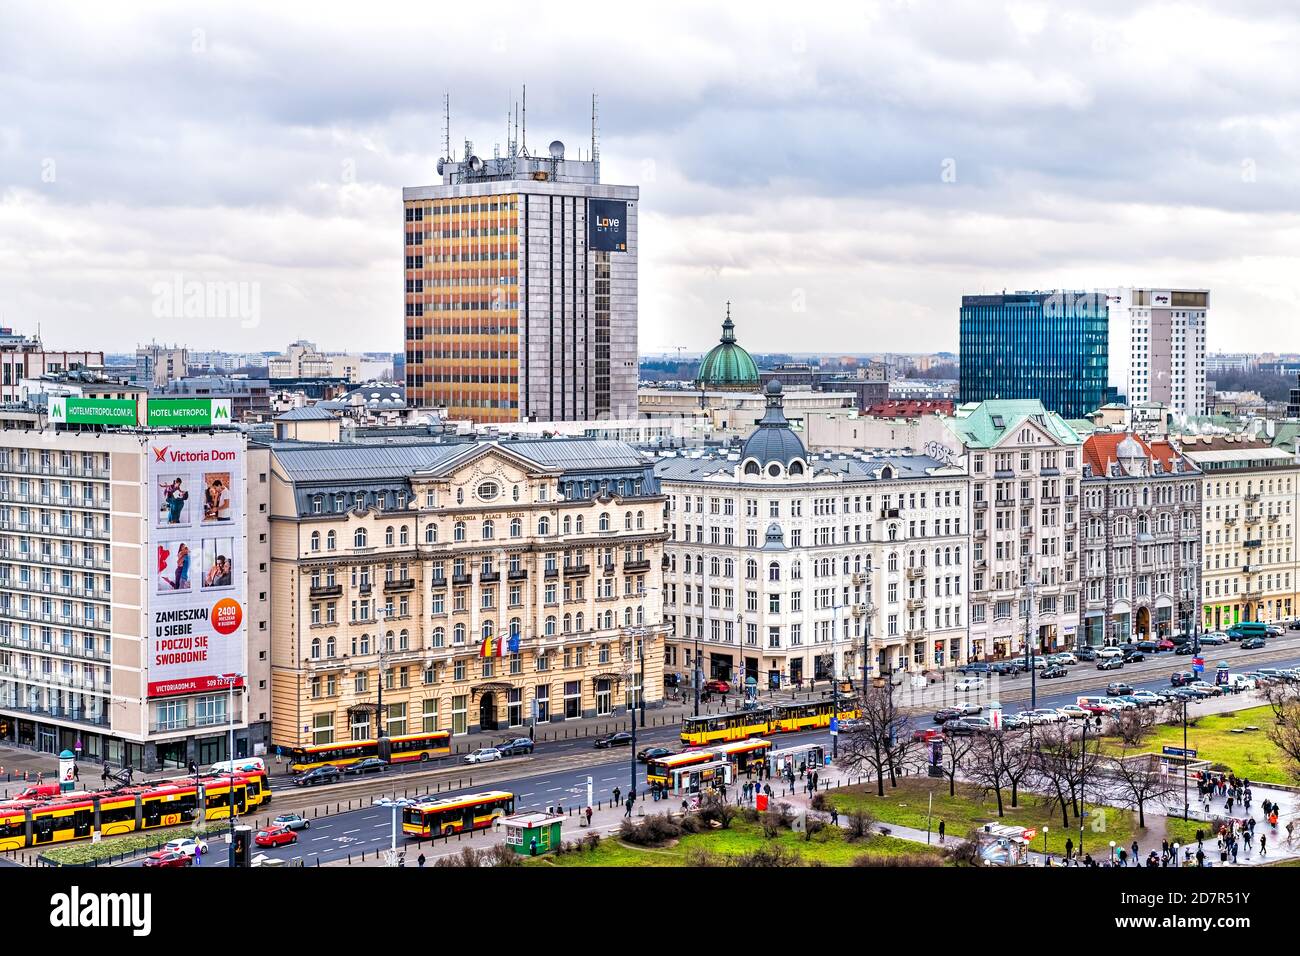 Varsovia, Polonia - 22 de enero de 2020: Vista aérea de alto ángulo del horizonte urbano de Varsovia cerca de la estación de tren de centralna y señales en los edificios Foto de stock